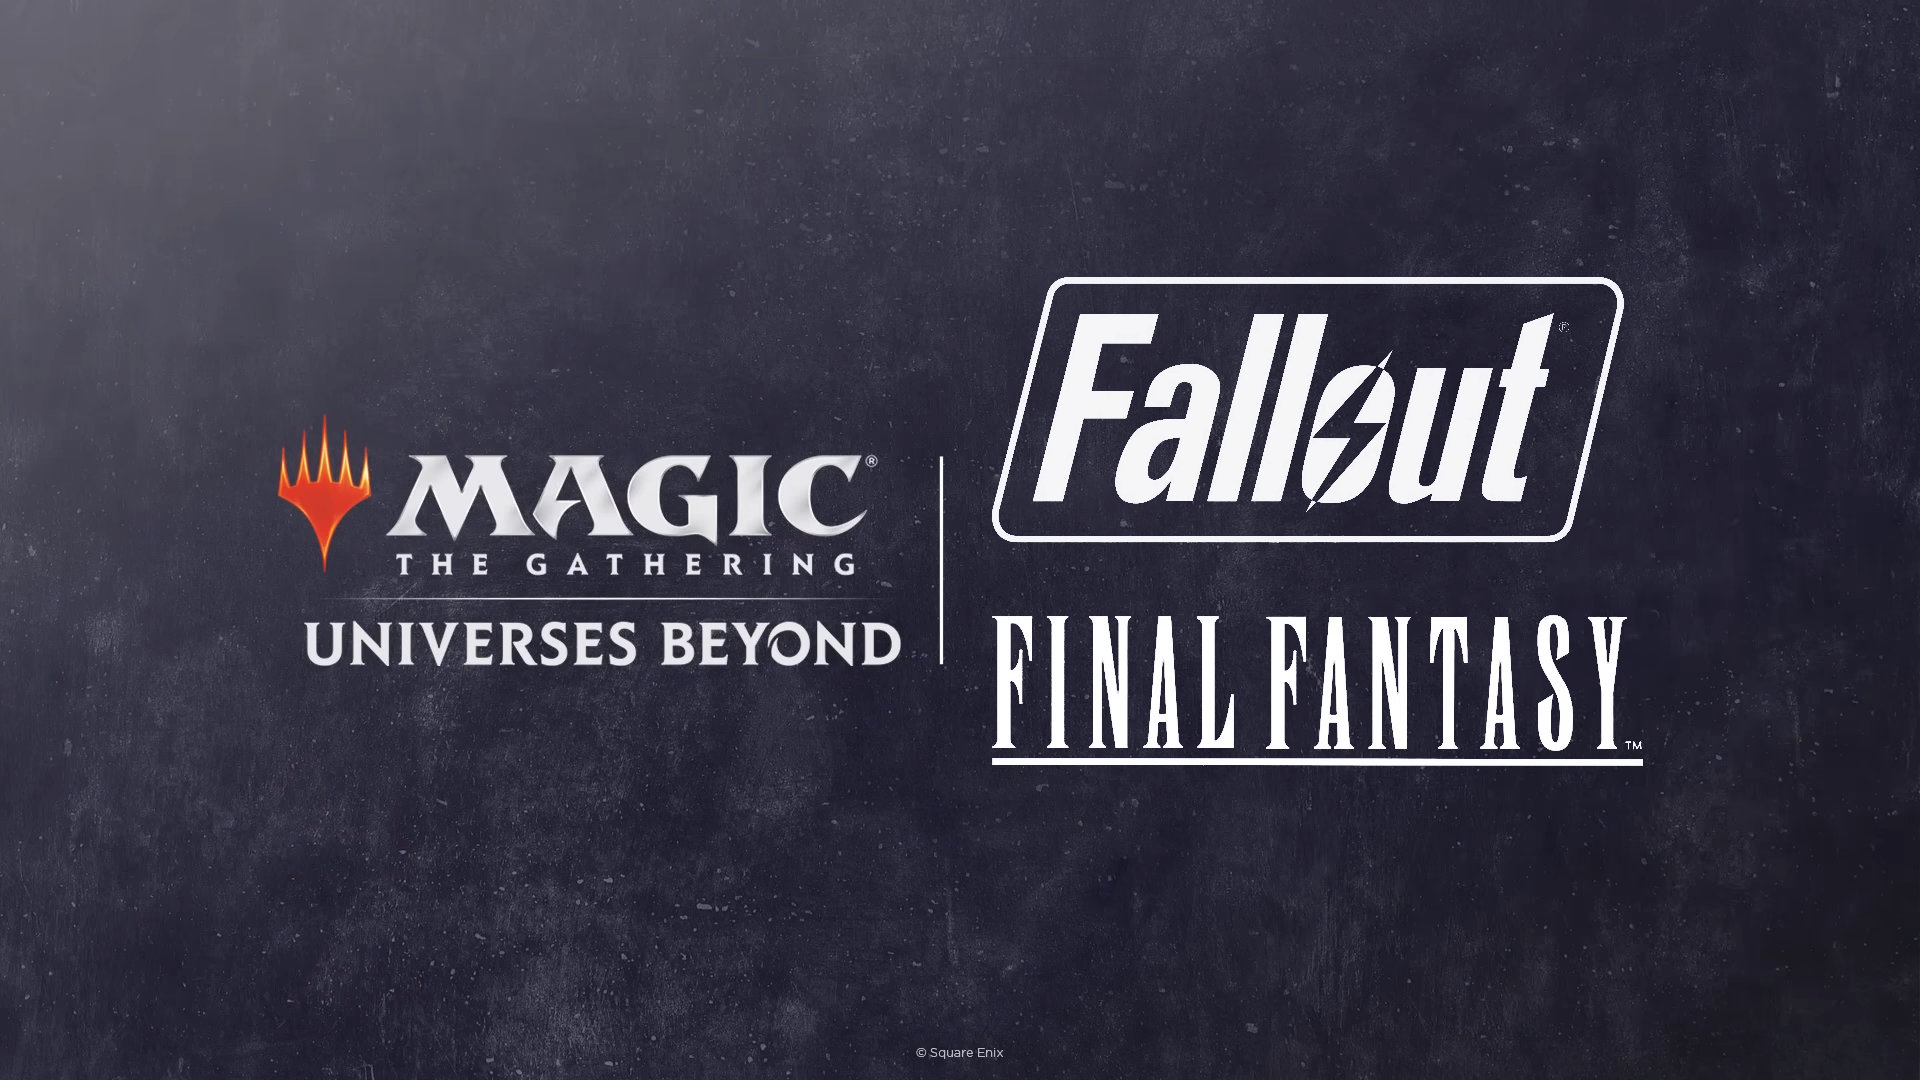 Magic: The Gathering Fallout and Final Fantasy Logos